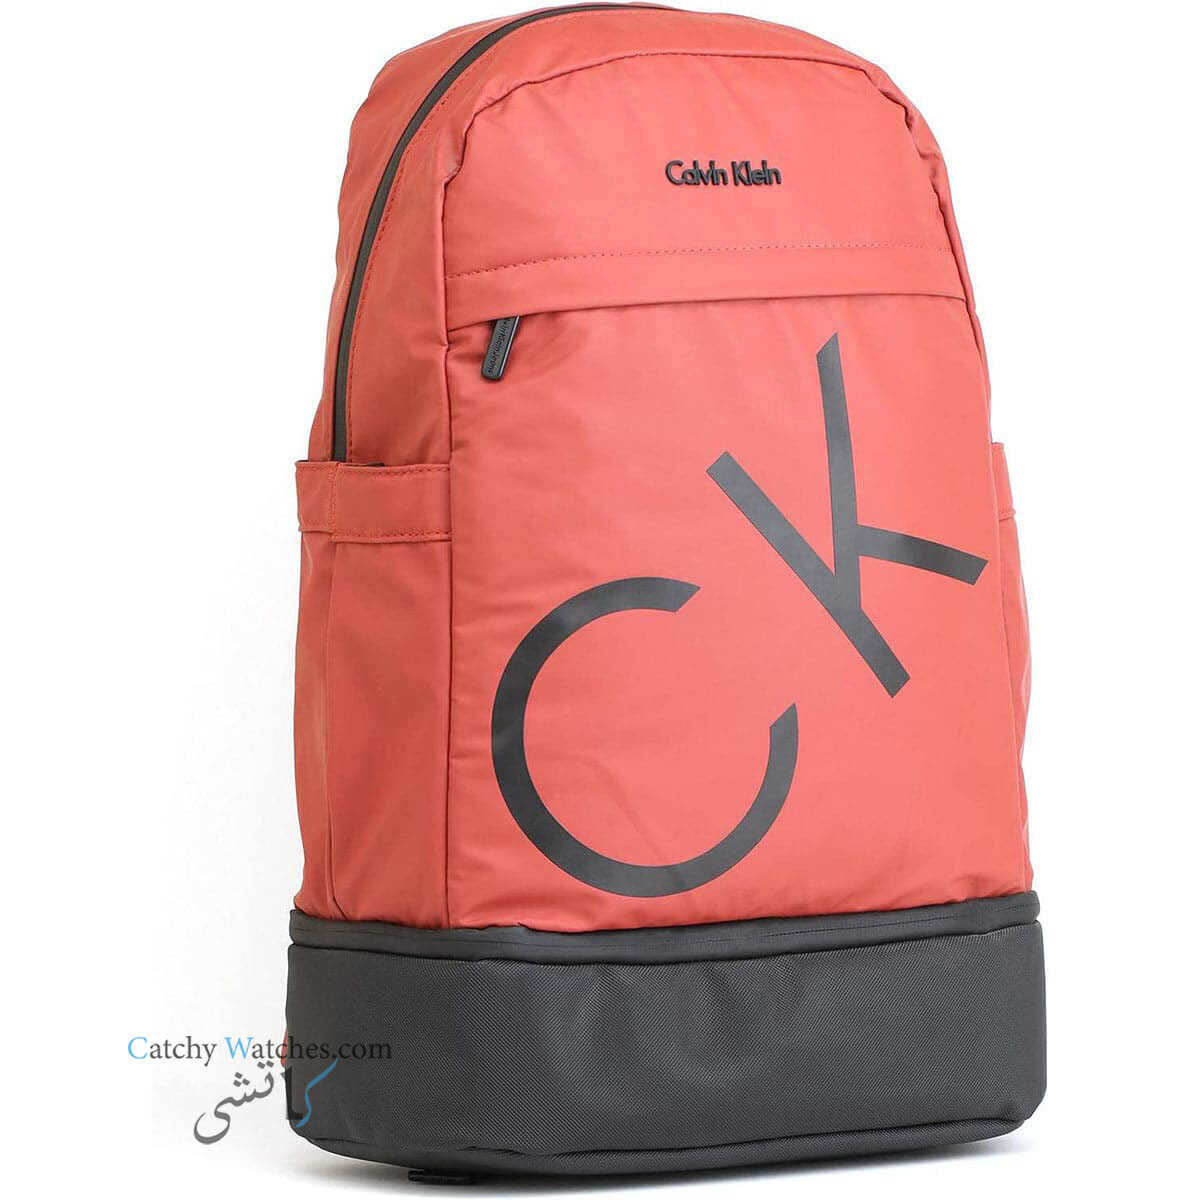 Calvin-Klein-red-back-bag-for-men-ck